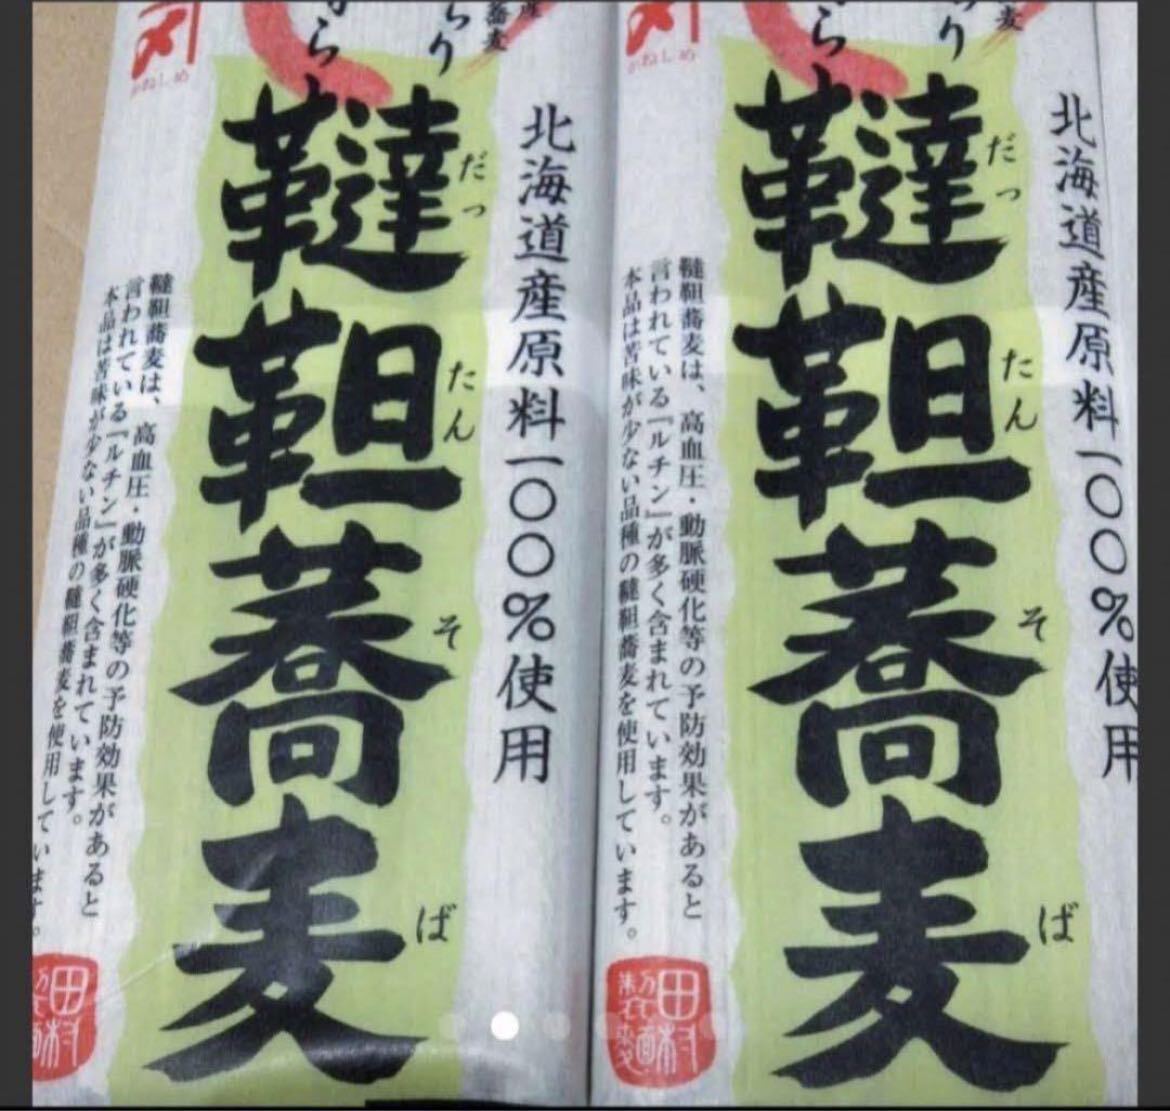  специальная цена Hokkaido сырье 100% тест хороший .. соба soba соба . лапша supplement Pro Tey здоровое питание диета 